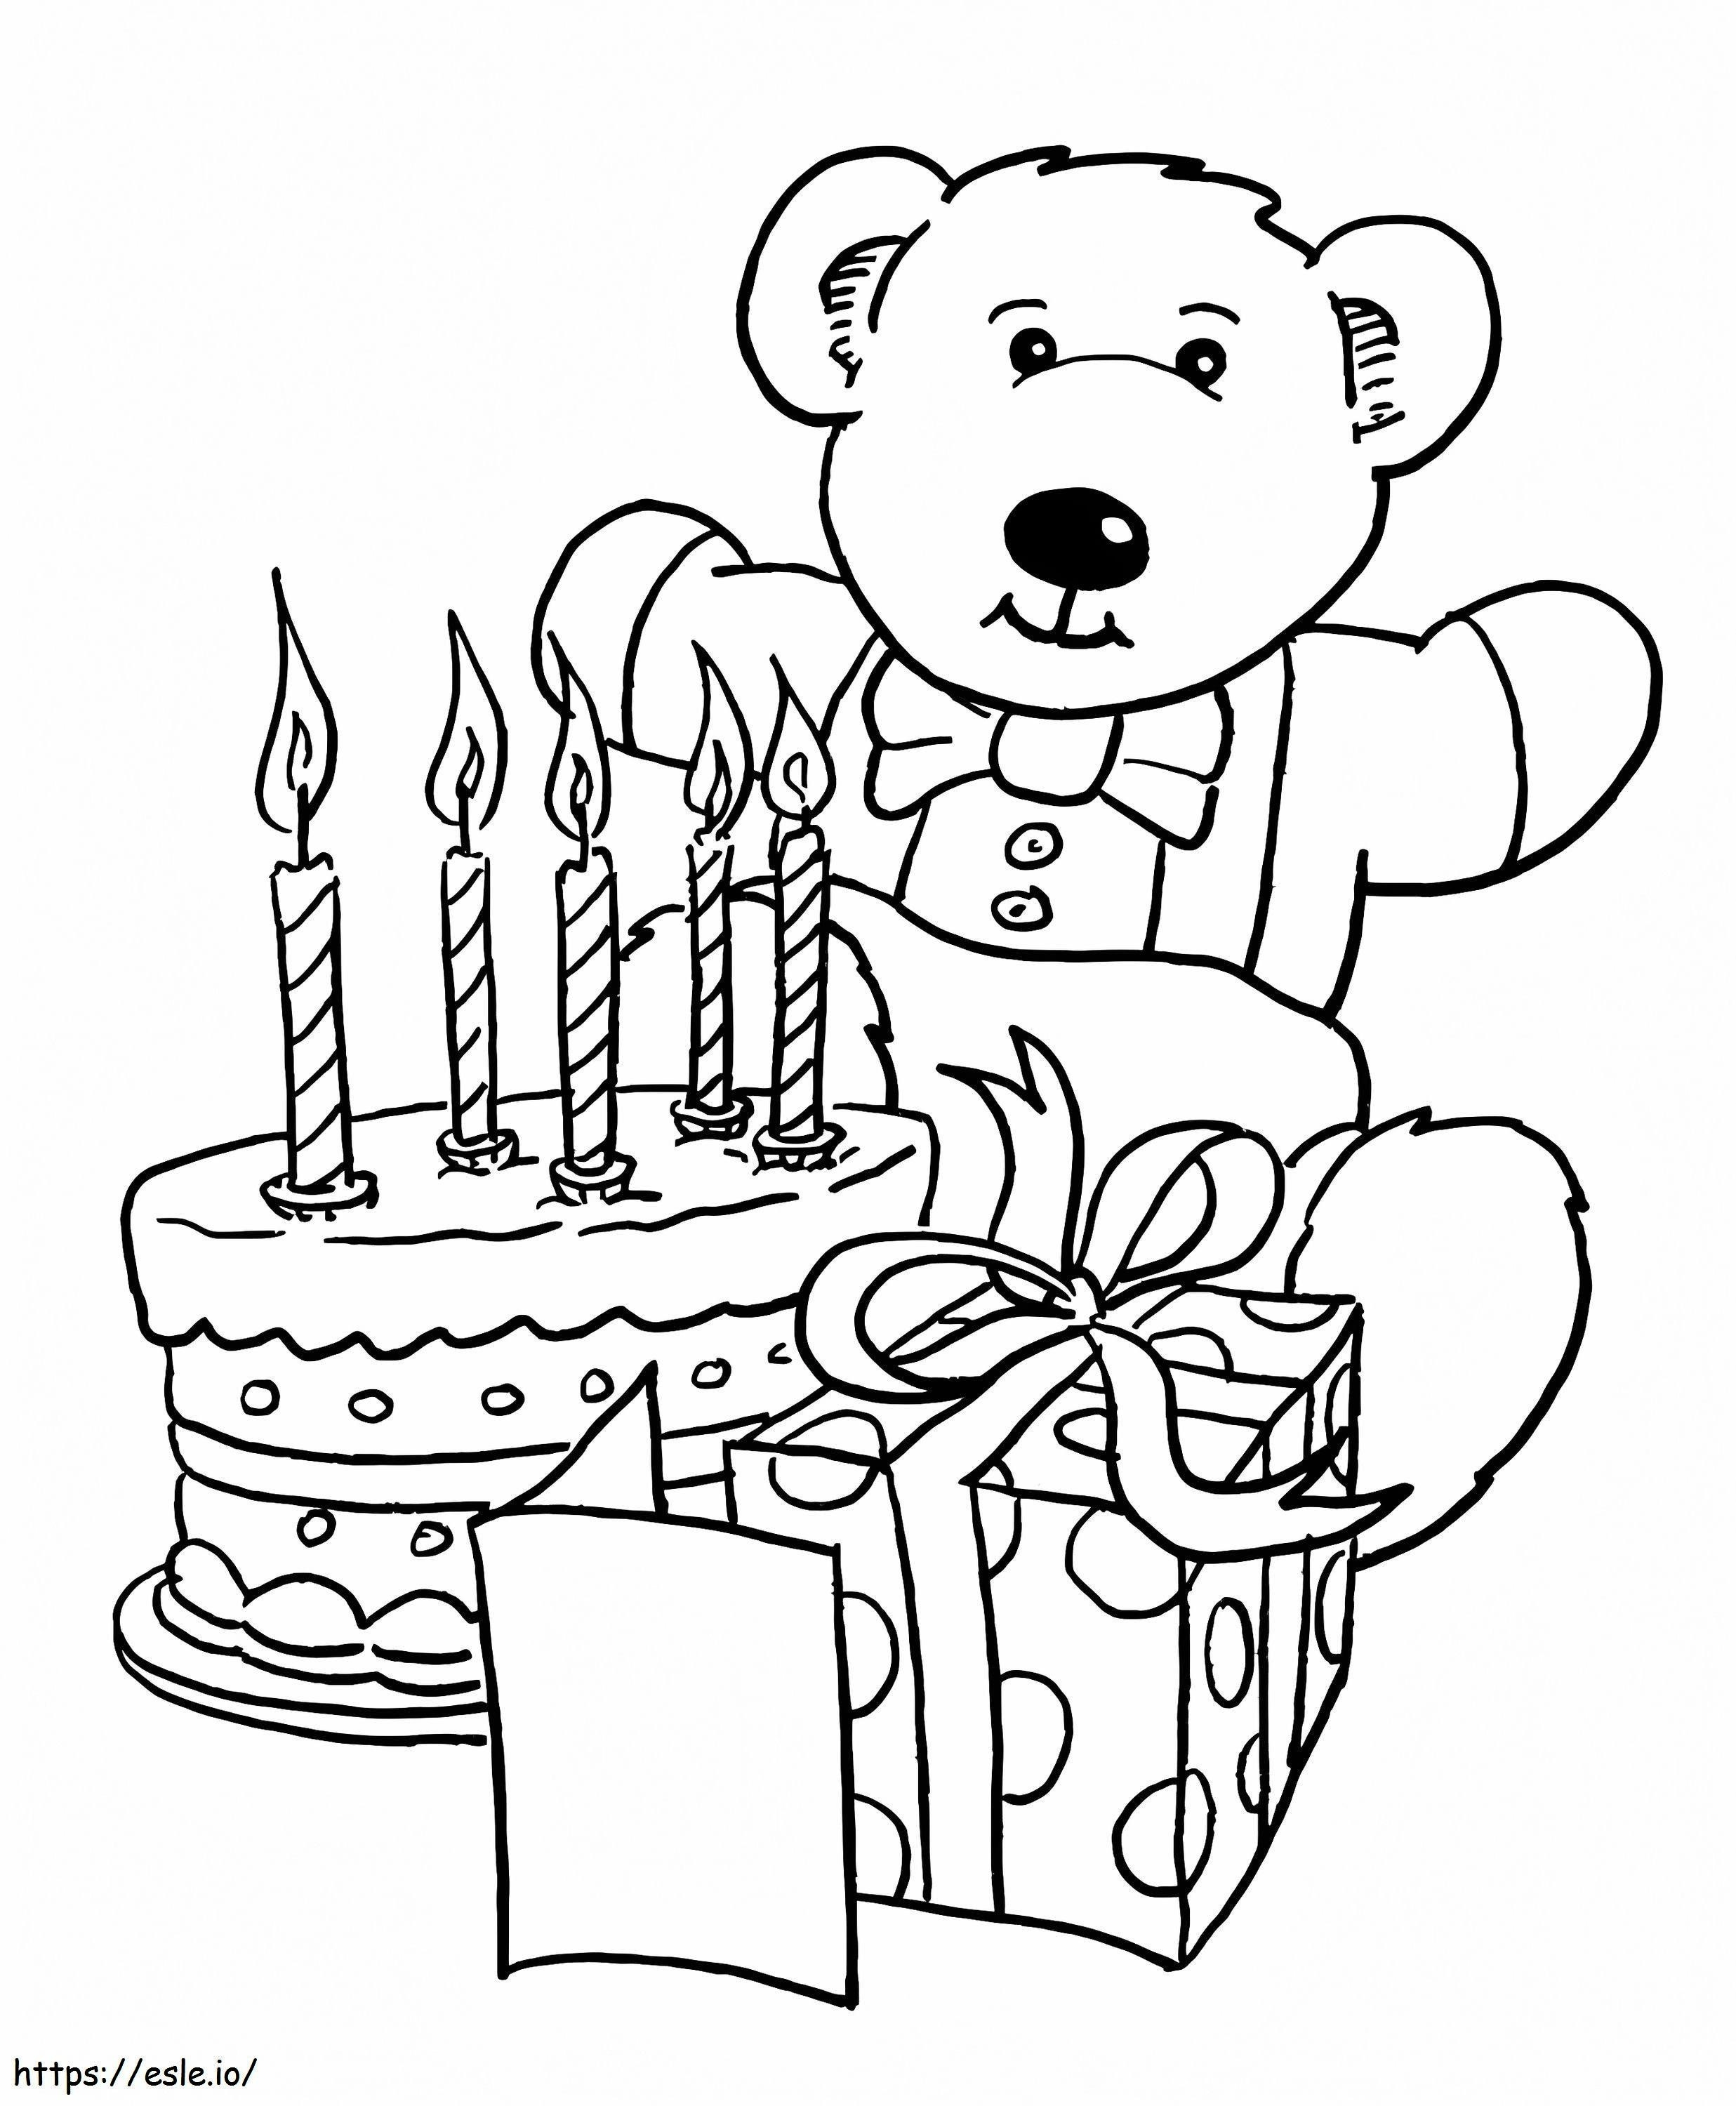 Brinquedo e bolo de aniversário para colorir